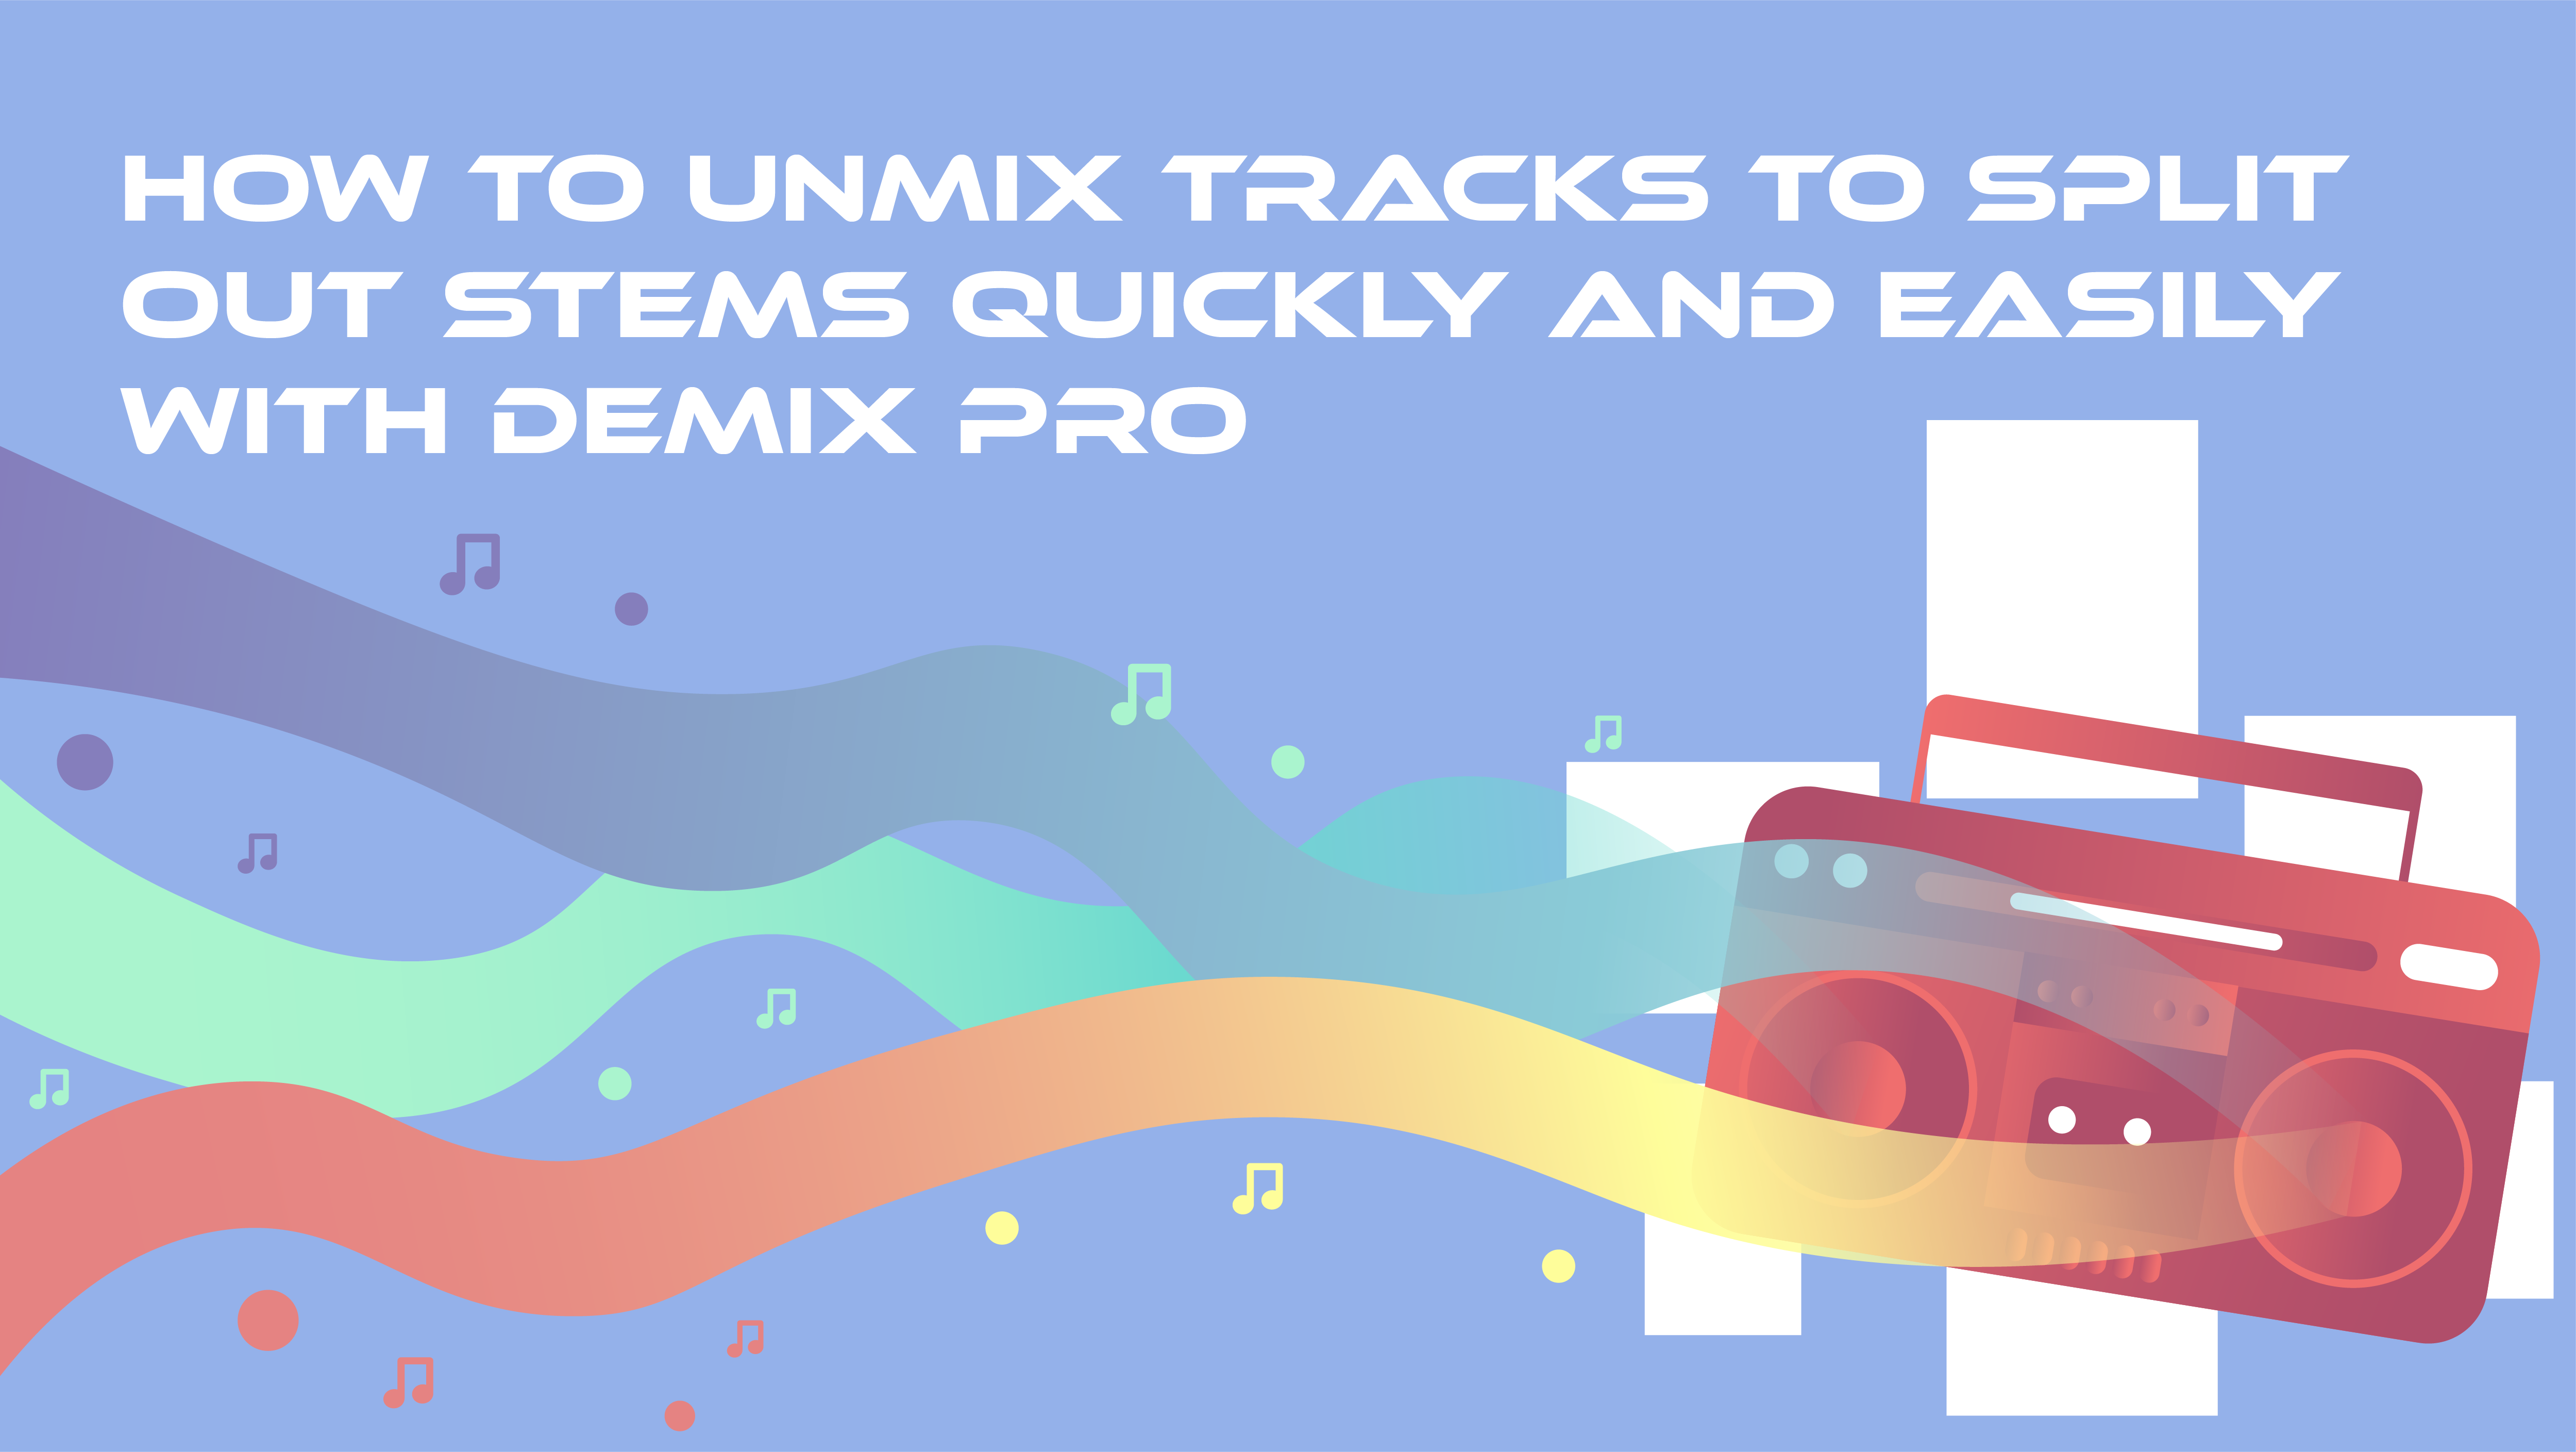 Come DeMix ProIl software Un-Mix delle tracce per la rimasterizzazione